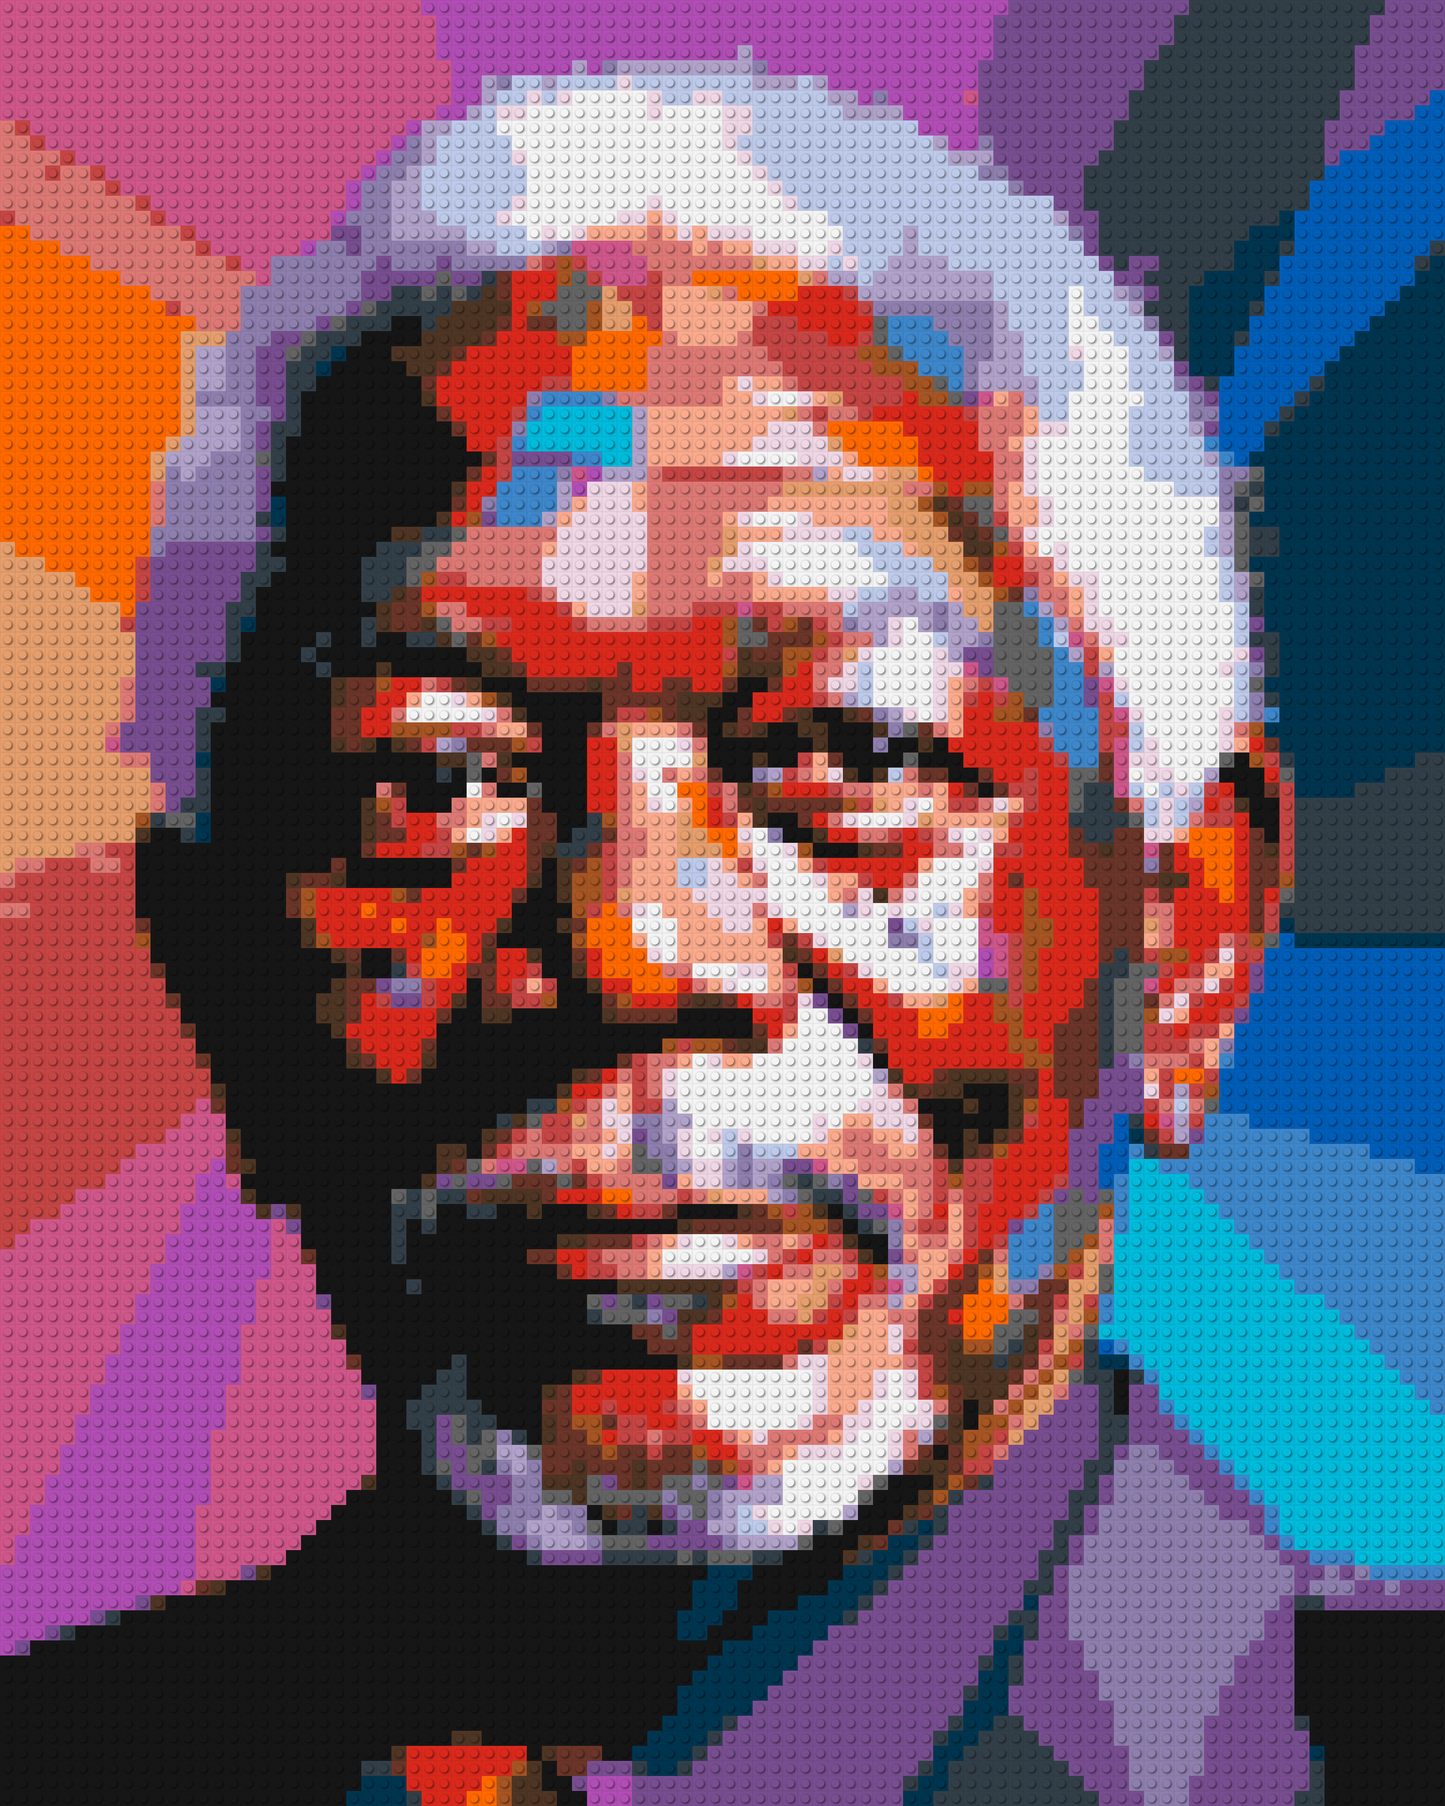 Morgan Freeman - Brick Art Mosaic Kit